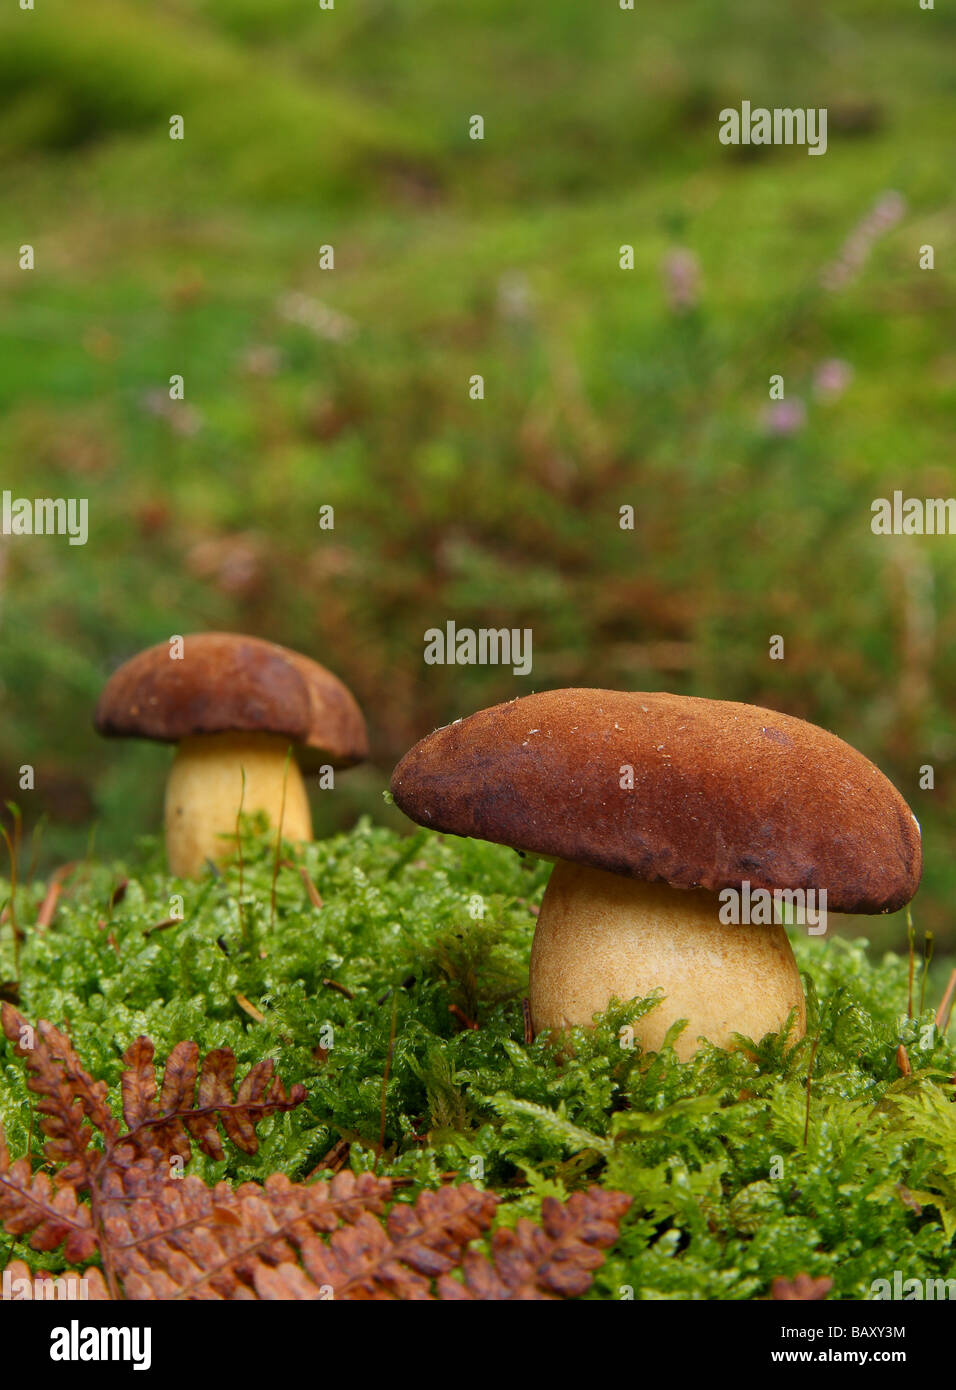 Deux Cep ou Penny bun champignons (Boletus edulis) dans la forêt moussue. Limousin France. Banque D'Images